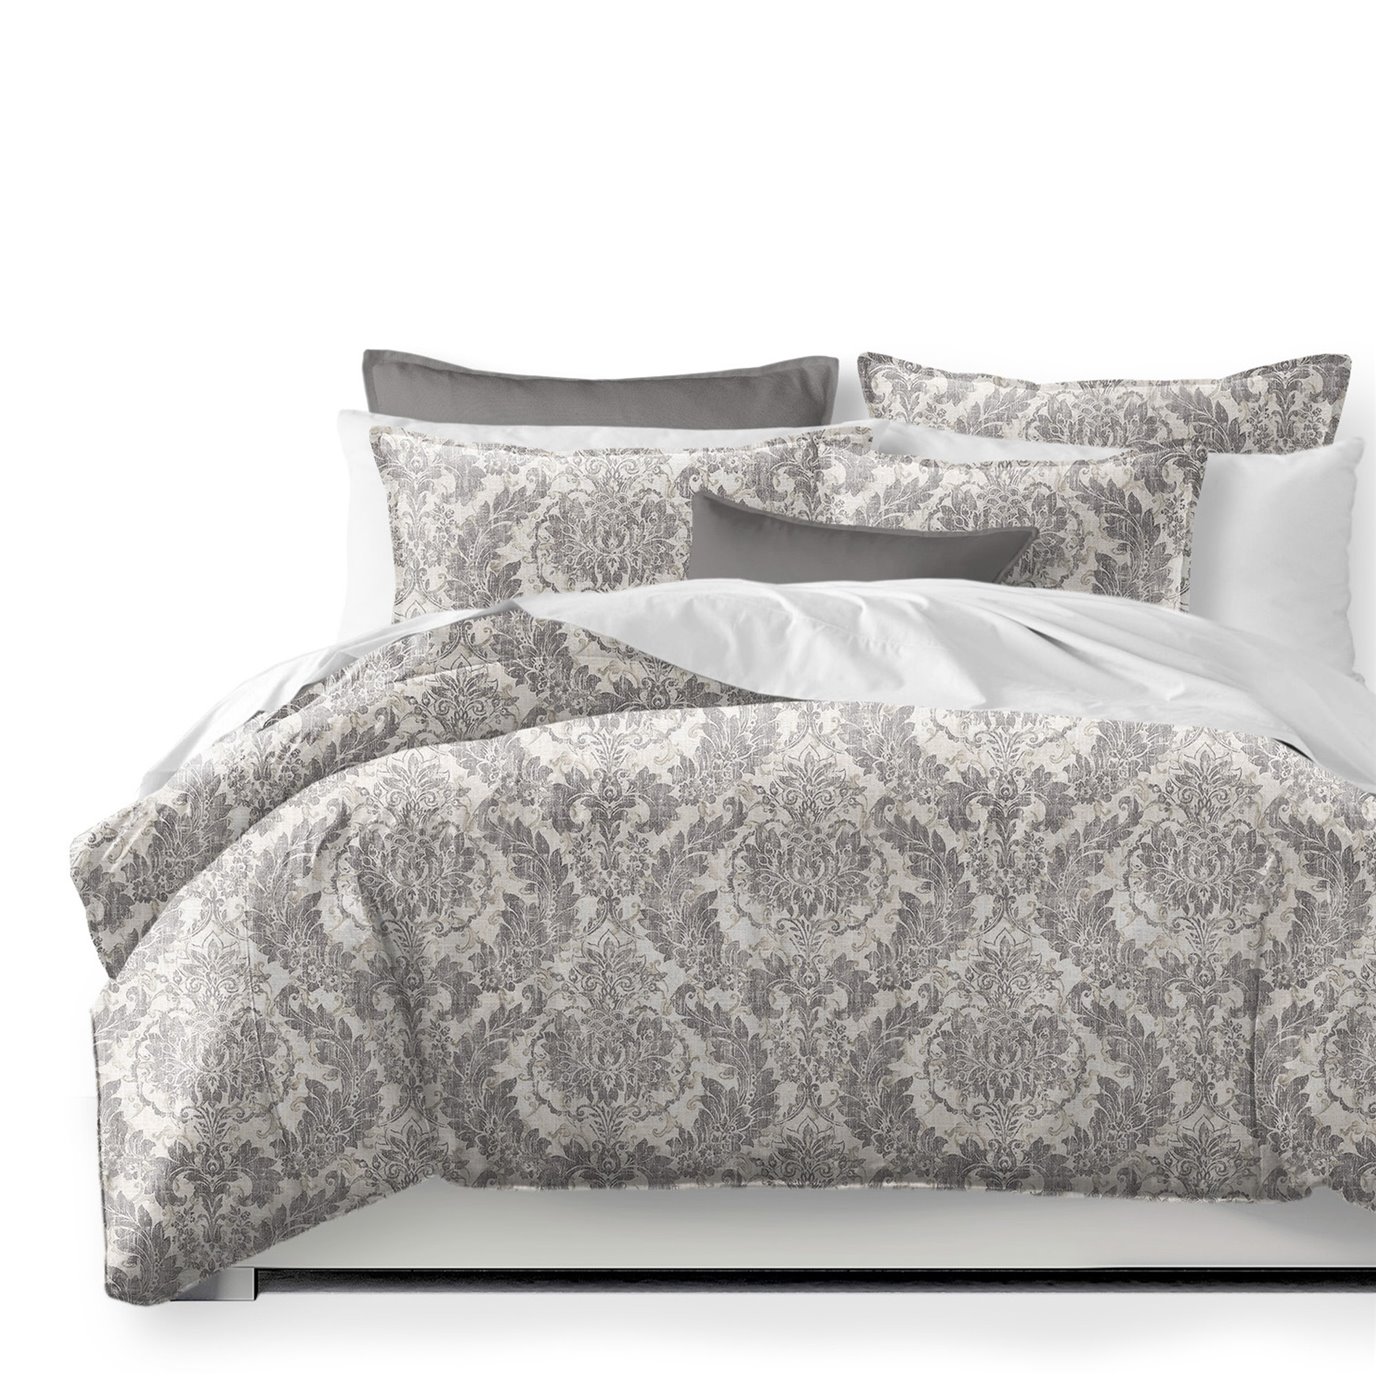 Damaskus Linen Graphite Coverlet and Pillow Sham(s) Set - Size Full